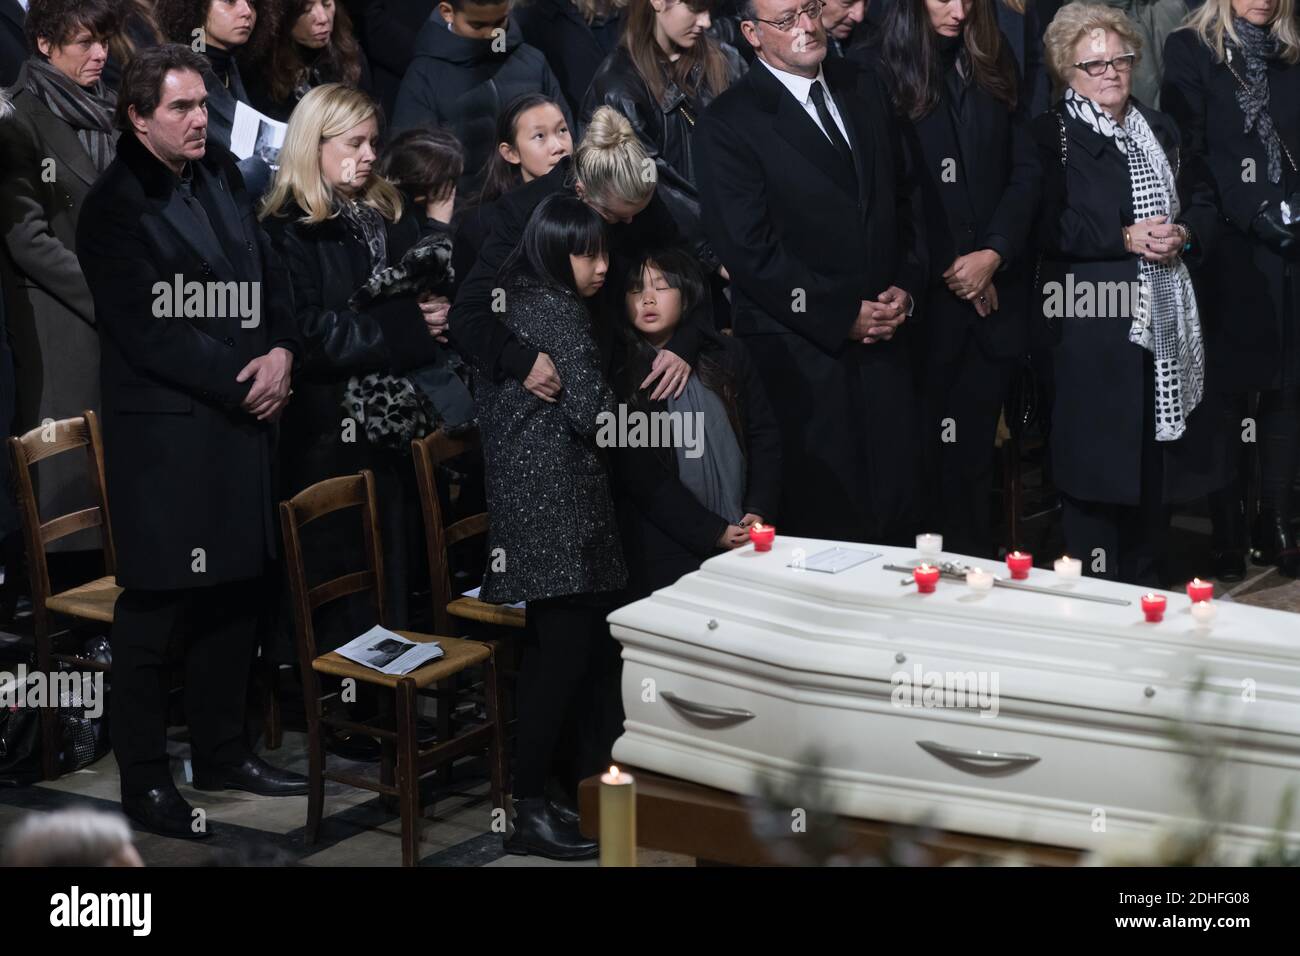 Laeticia, Joy et Jade Hallyday à la cérémonie funéraire en hommage au regretté chanteur français Johnny Hallyday à l'église de la Madeleine à Paris, FRANCE -09/1/2017 photo de Jacques Witt/pool/ABACAPRESS.COM Banque D'Images